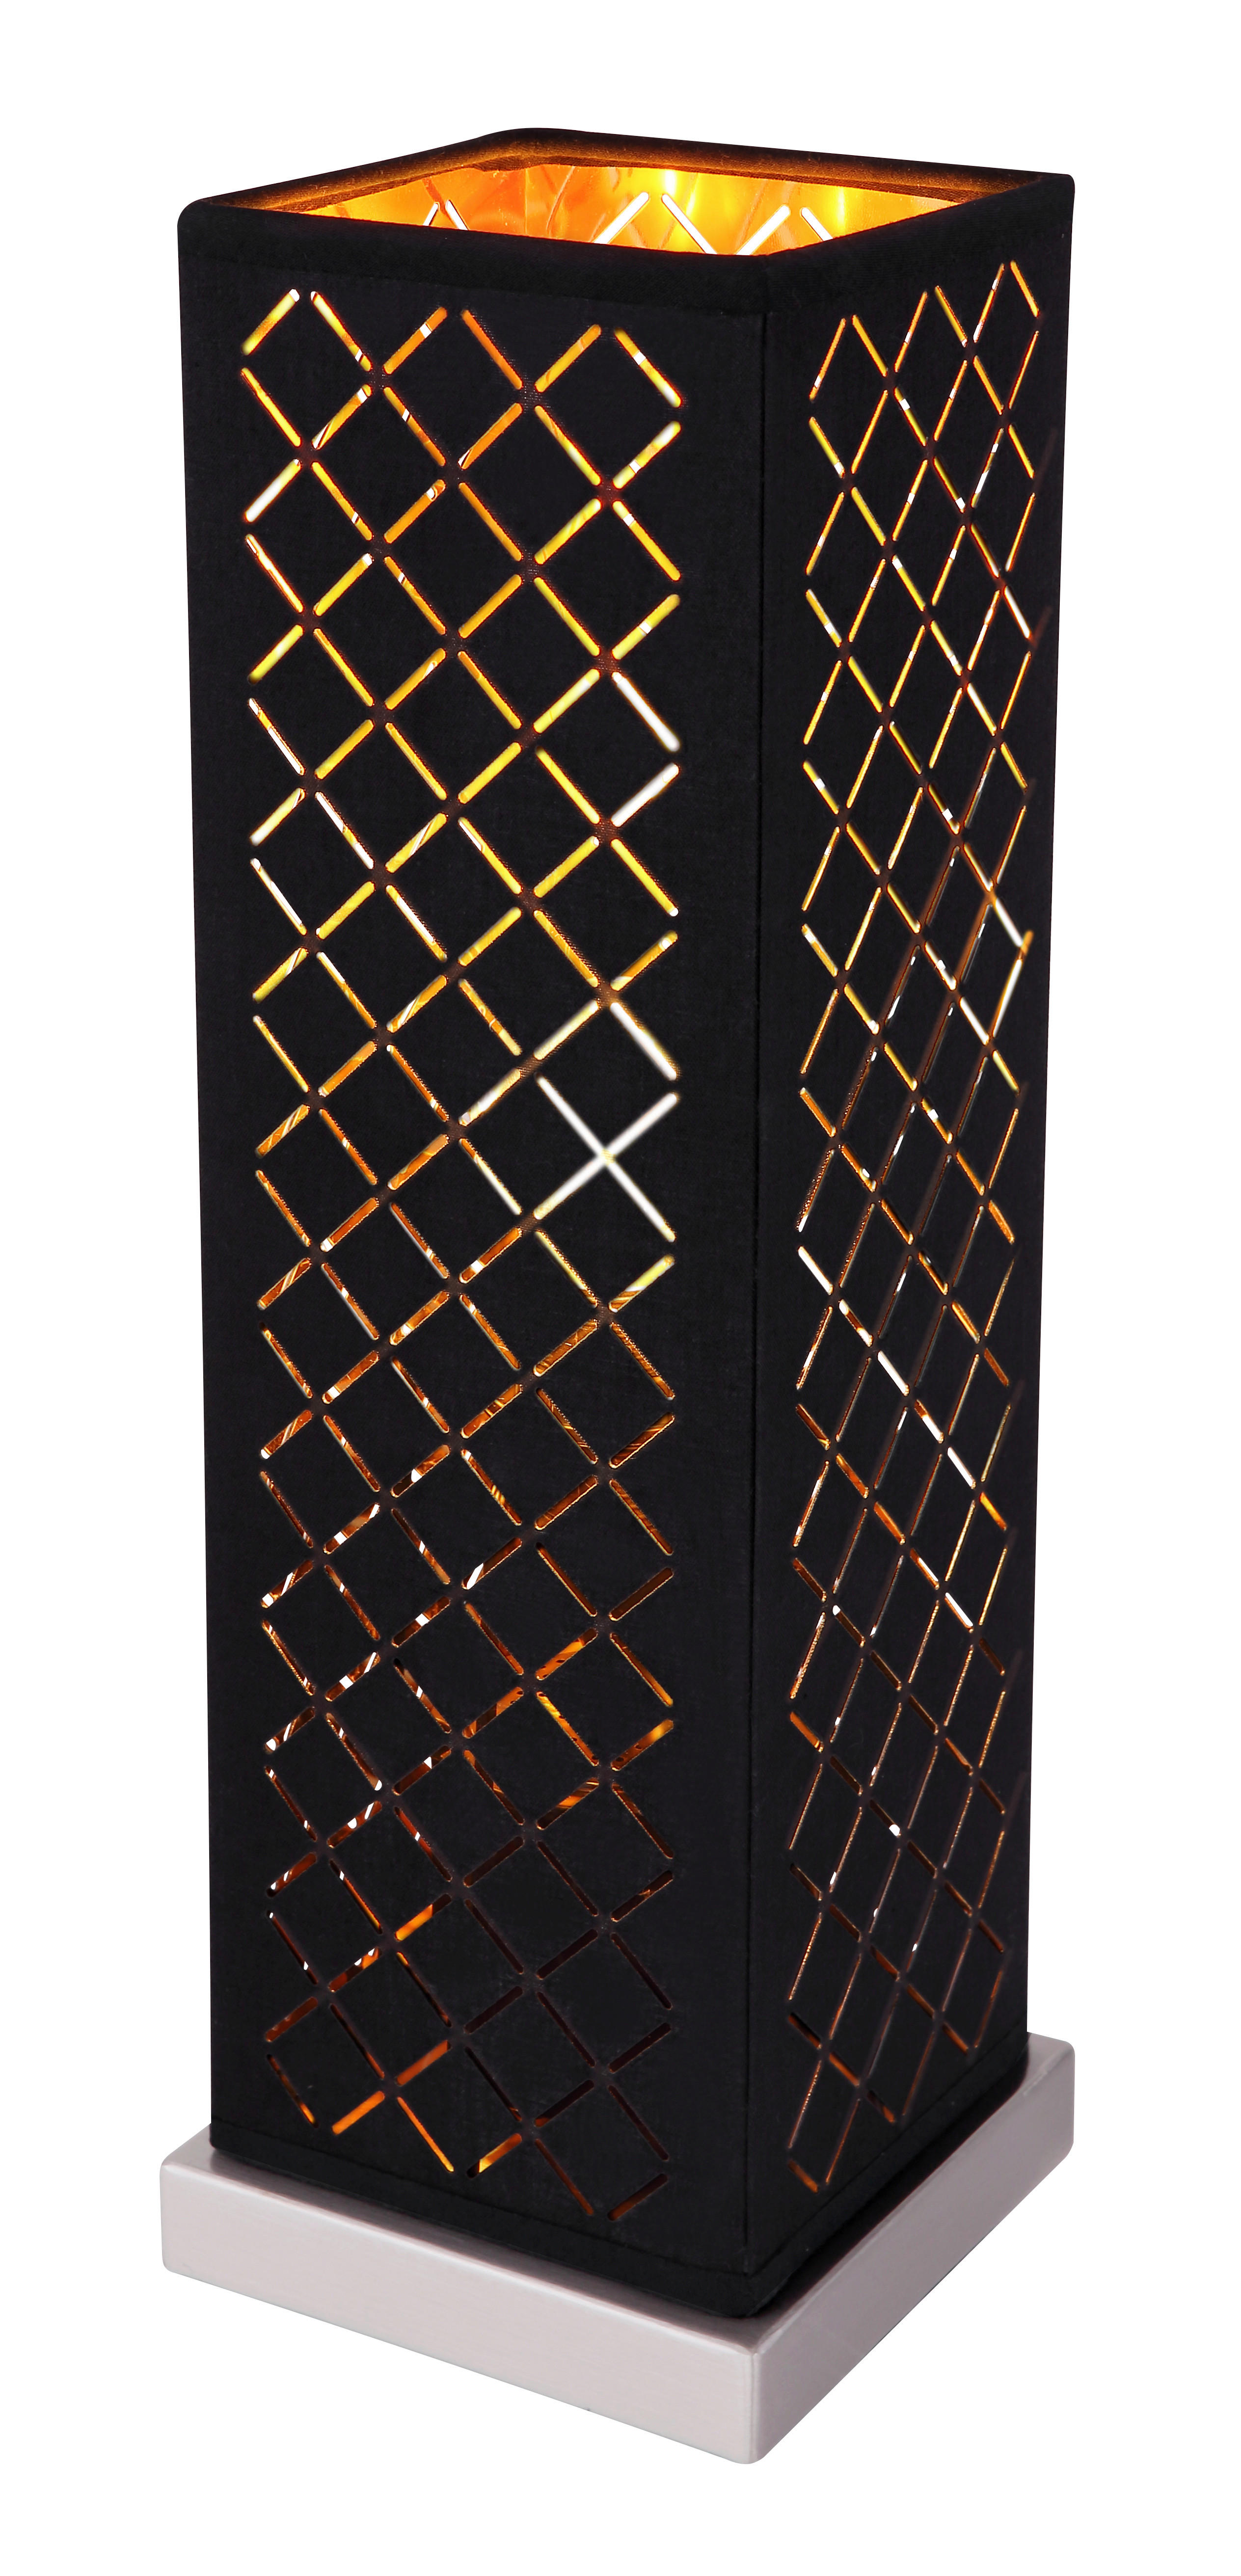 BORDSLAMPA 11/11/35 cm   - svart/guldfärgad, Design, metall/textil (11/11/35cm)